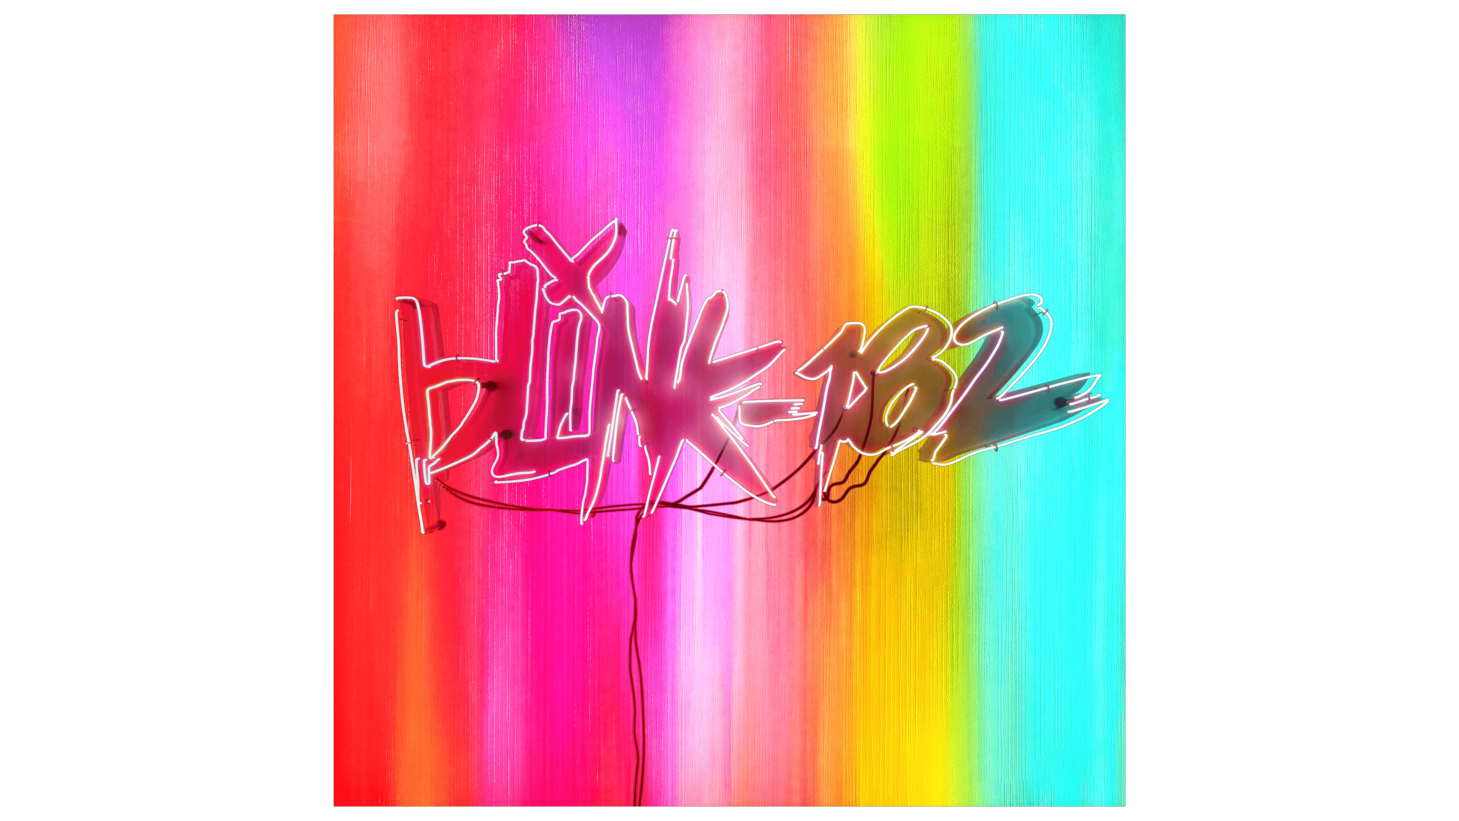 Blink 182 sign 2019 present